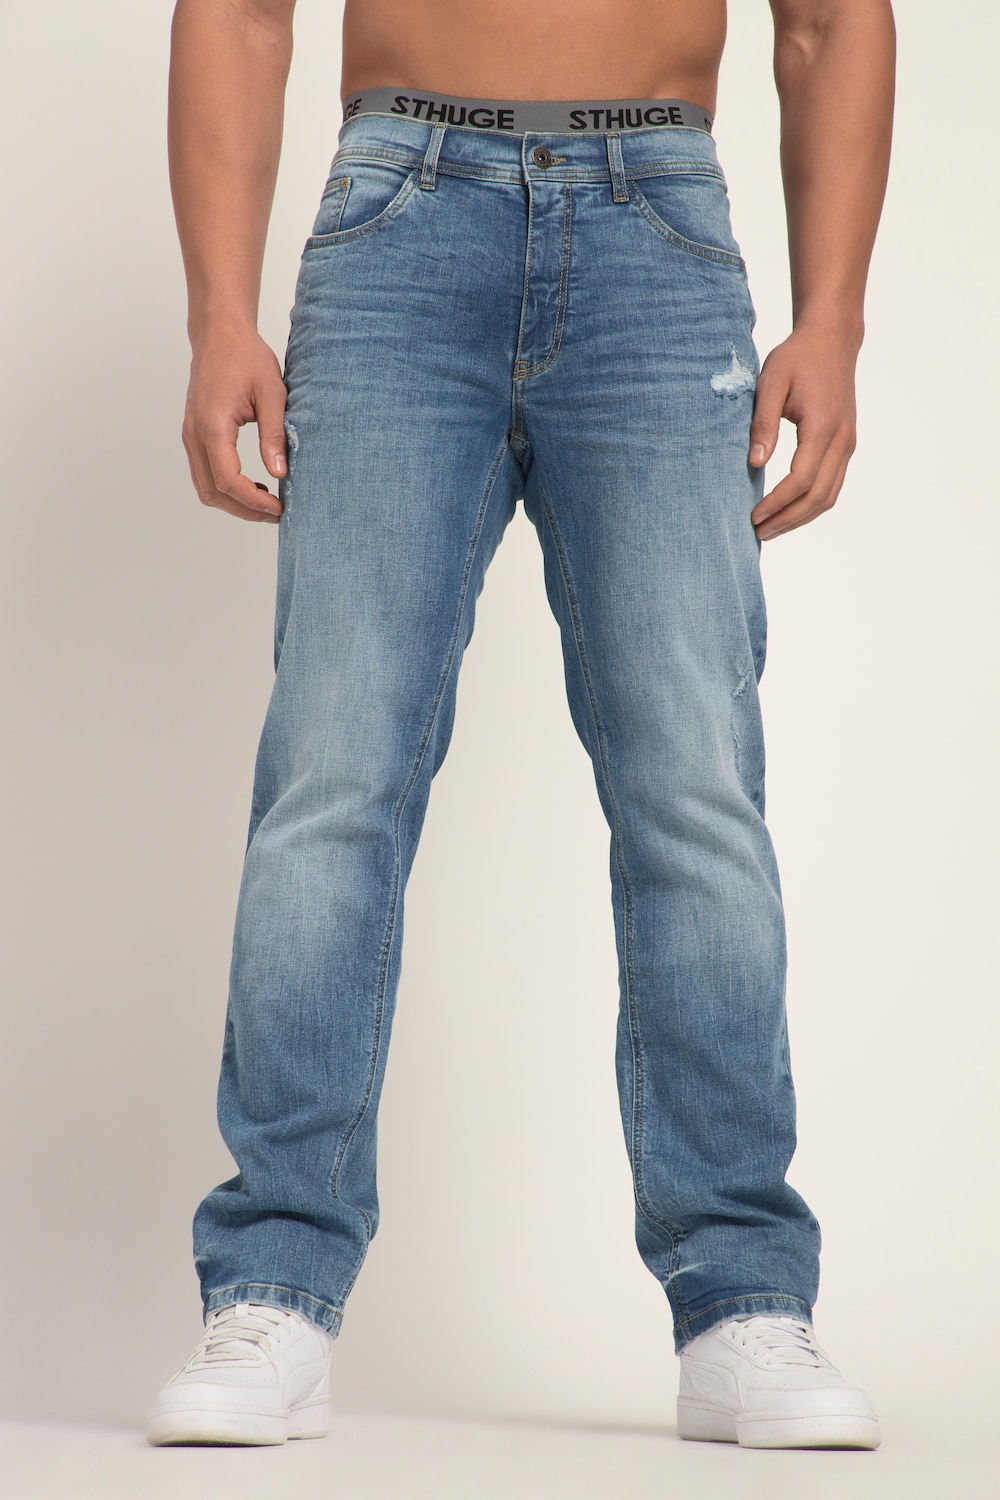 Grote Maten STHUGE Jeans FLEXLASTIC®male, blauw, Maat: 54, Katoen, STHUGE